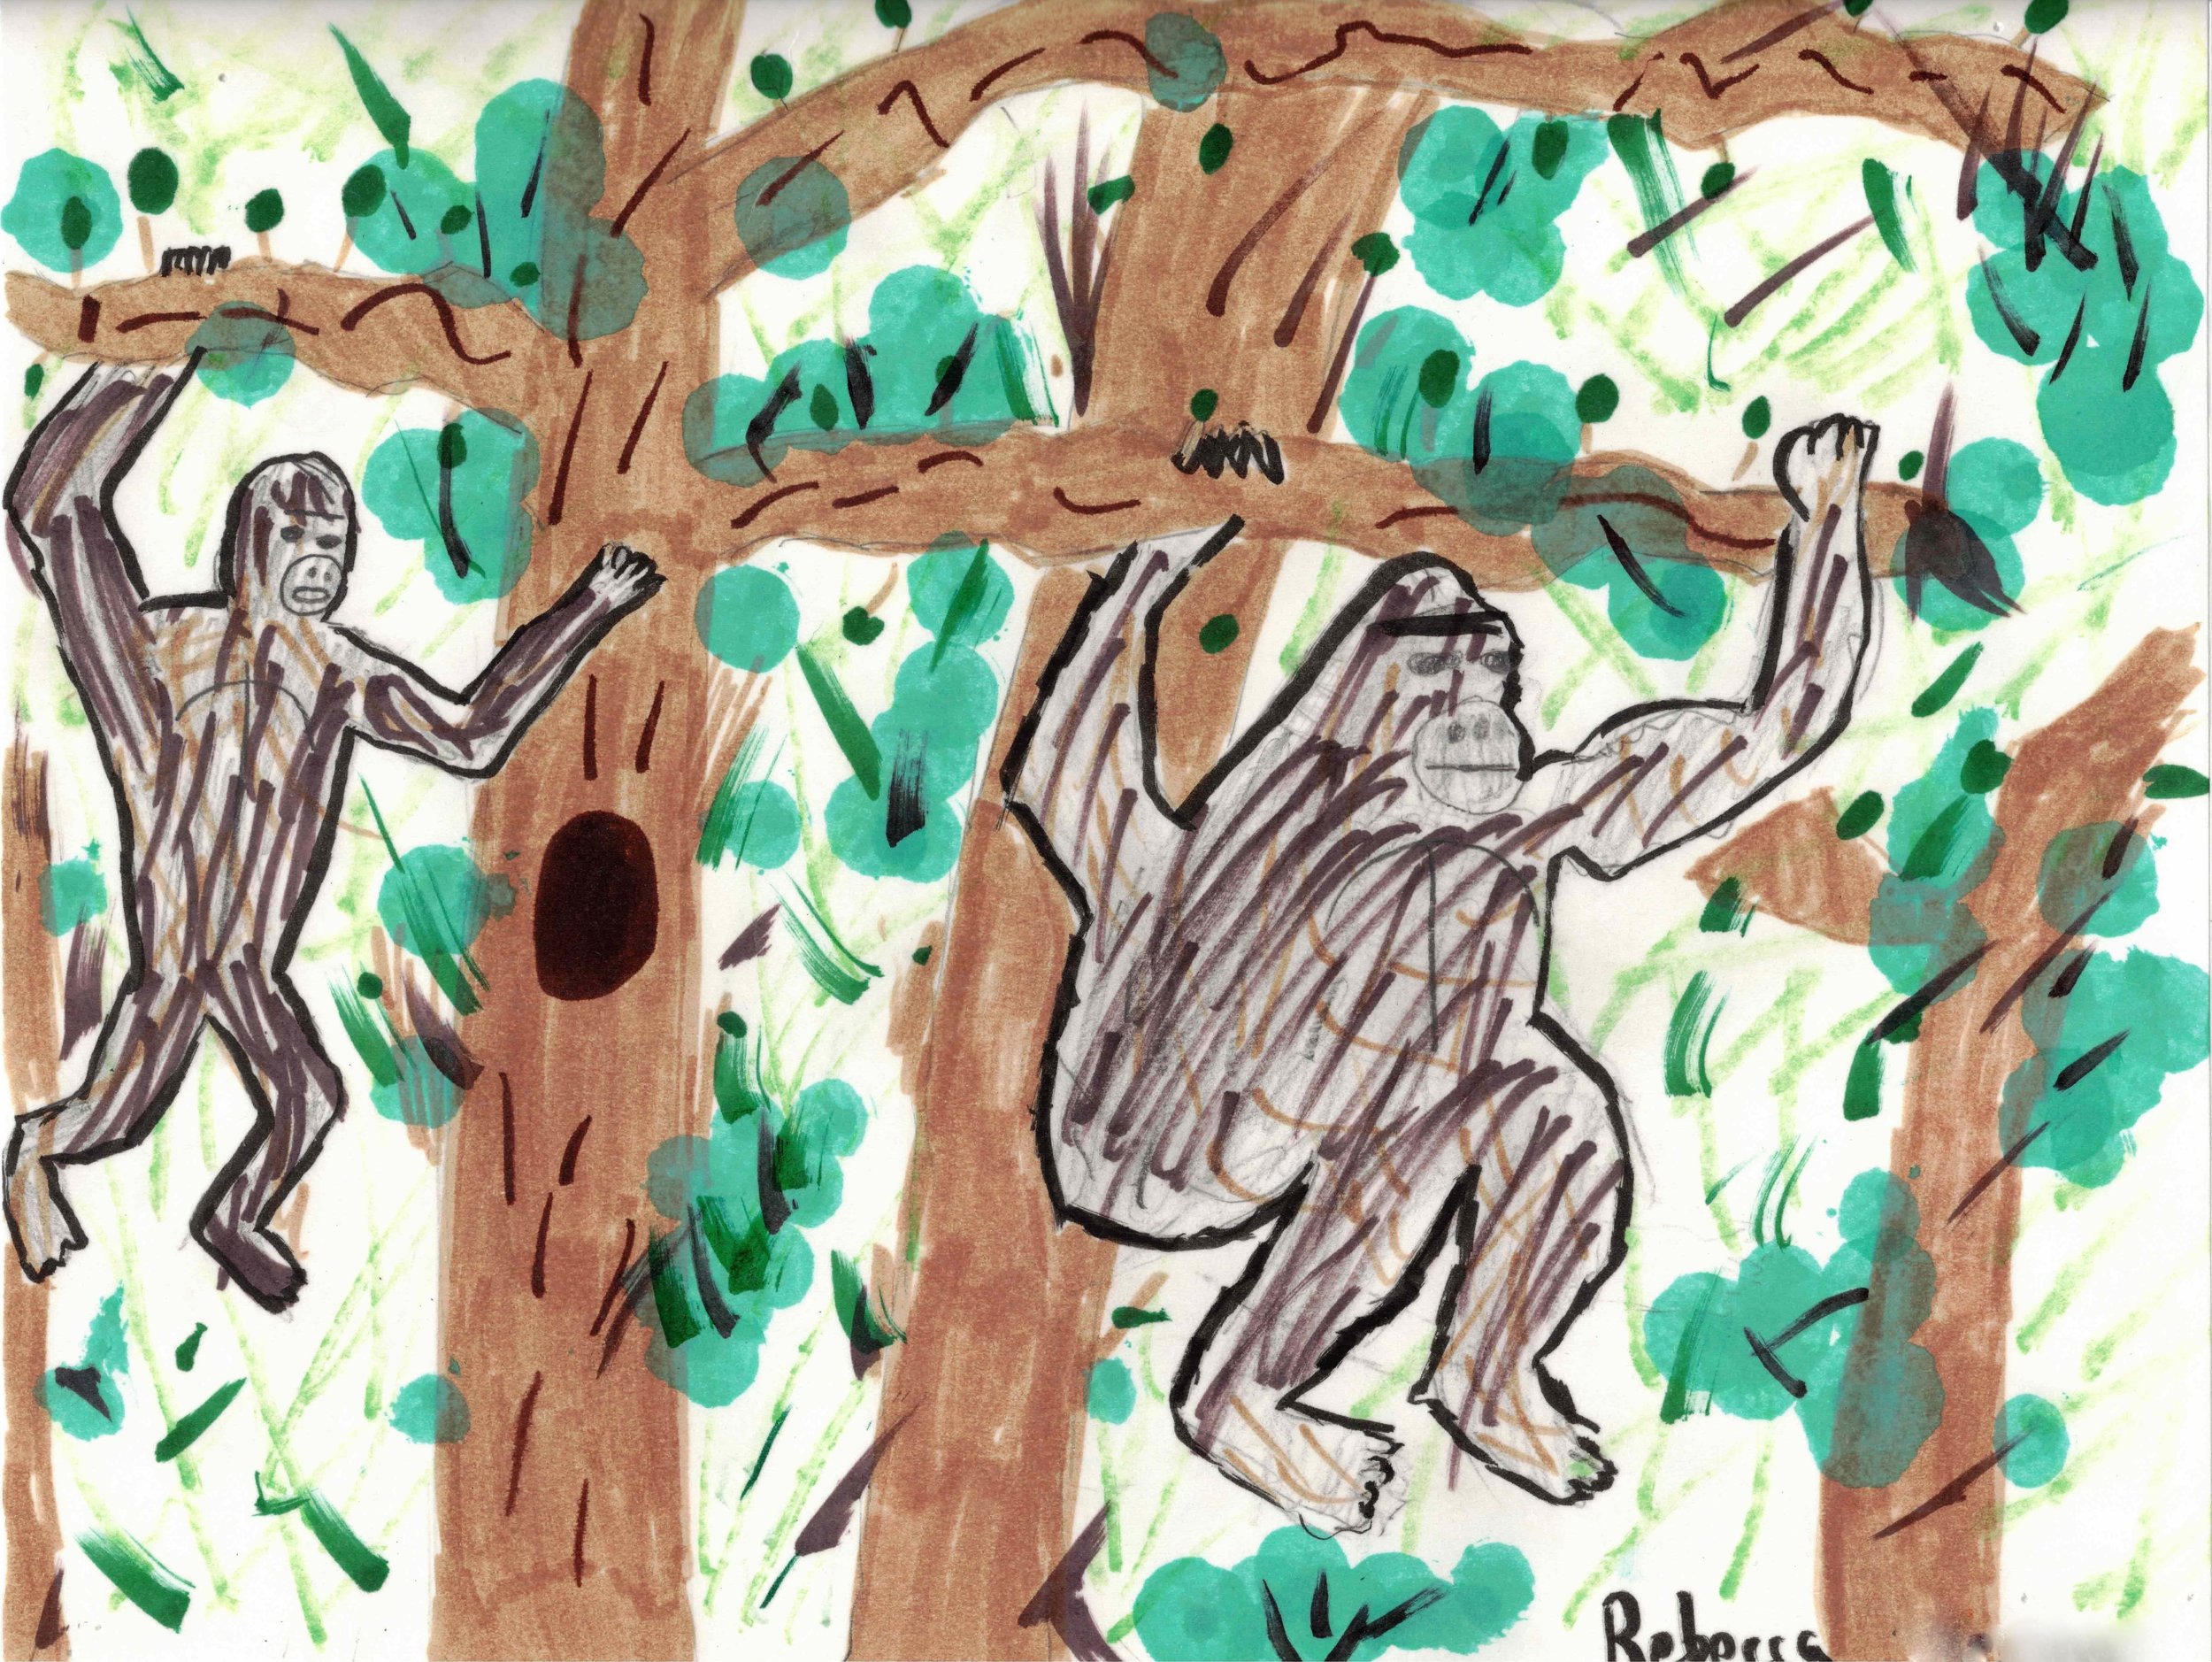 Swinging Apes